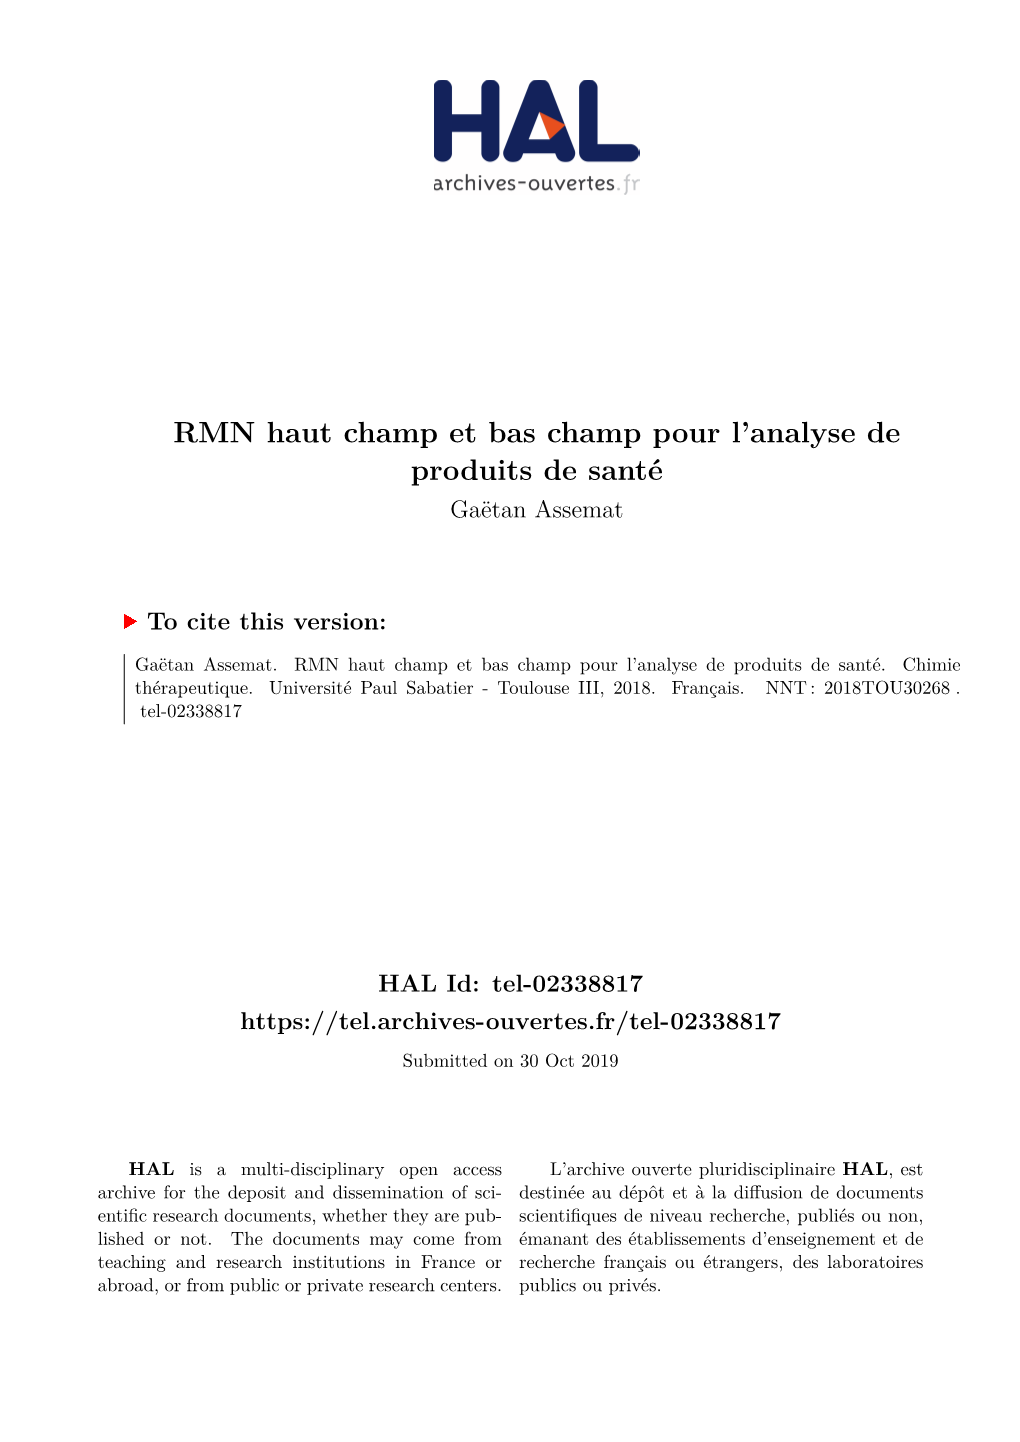 RMN Haut Champ Et Bas Champ Pour L'analyse De Produits De Santé